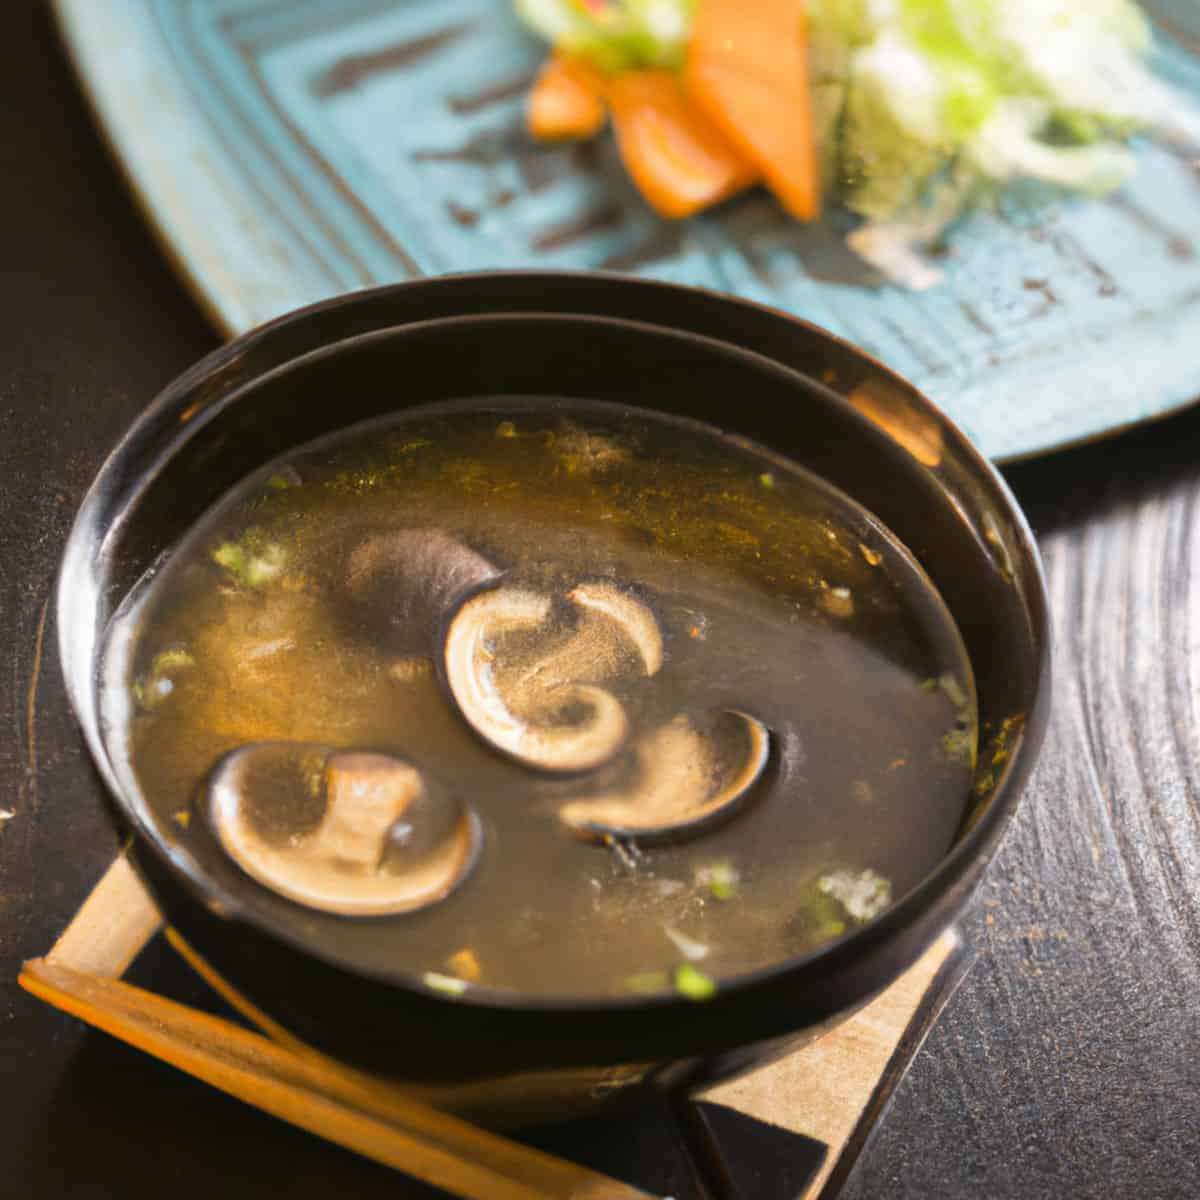 Hibachi Restaurant Soup Recept - Din perfekta aptitretare för alla måltider